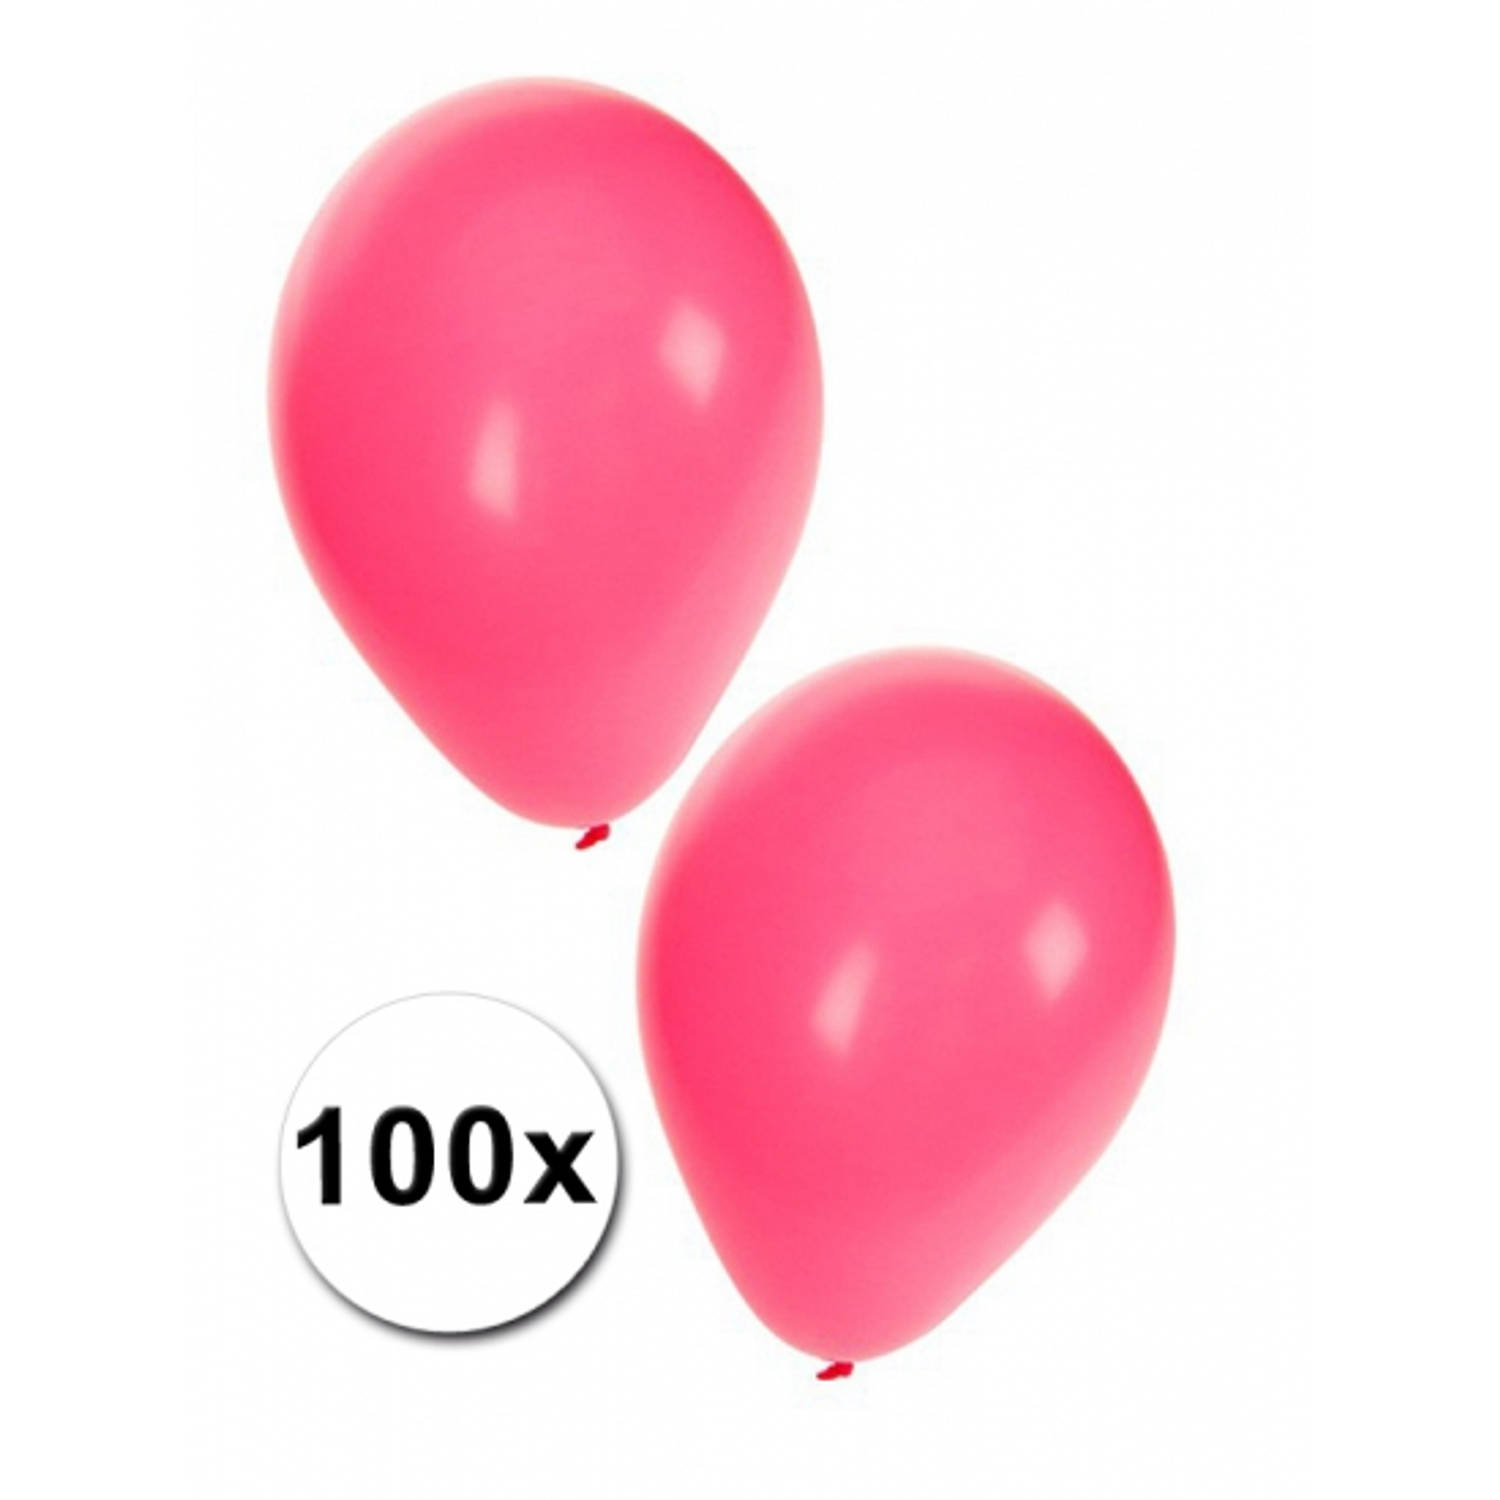 Geest fluctueren Aardbei Roze ballonnen 100 stuks - Ballonnen | Blokker